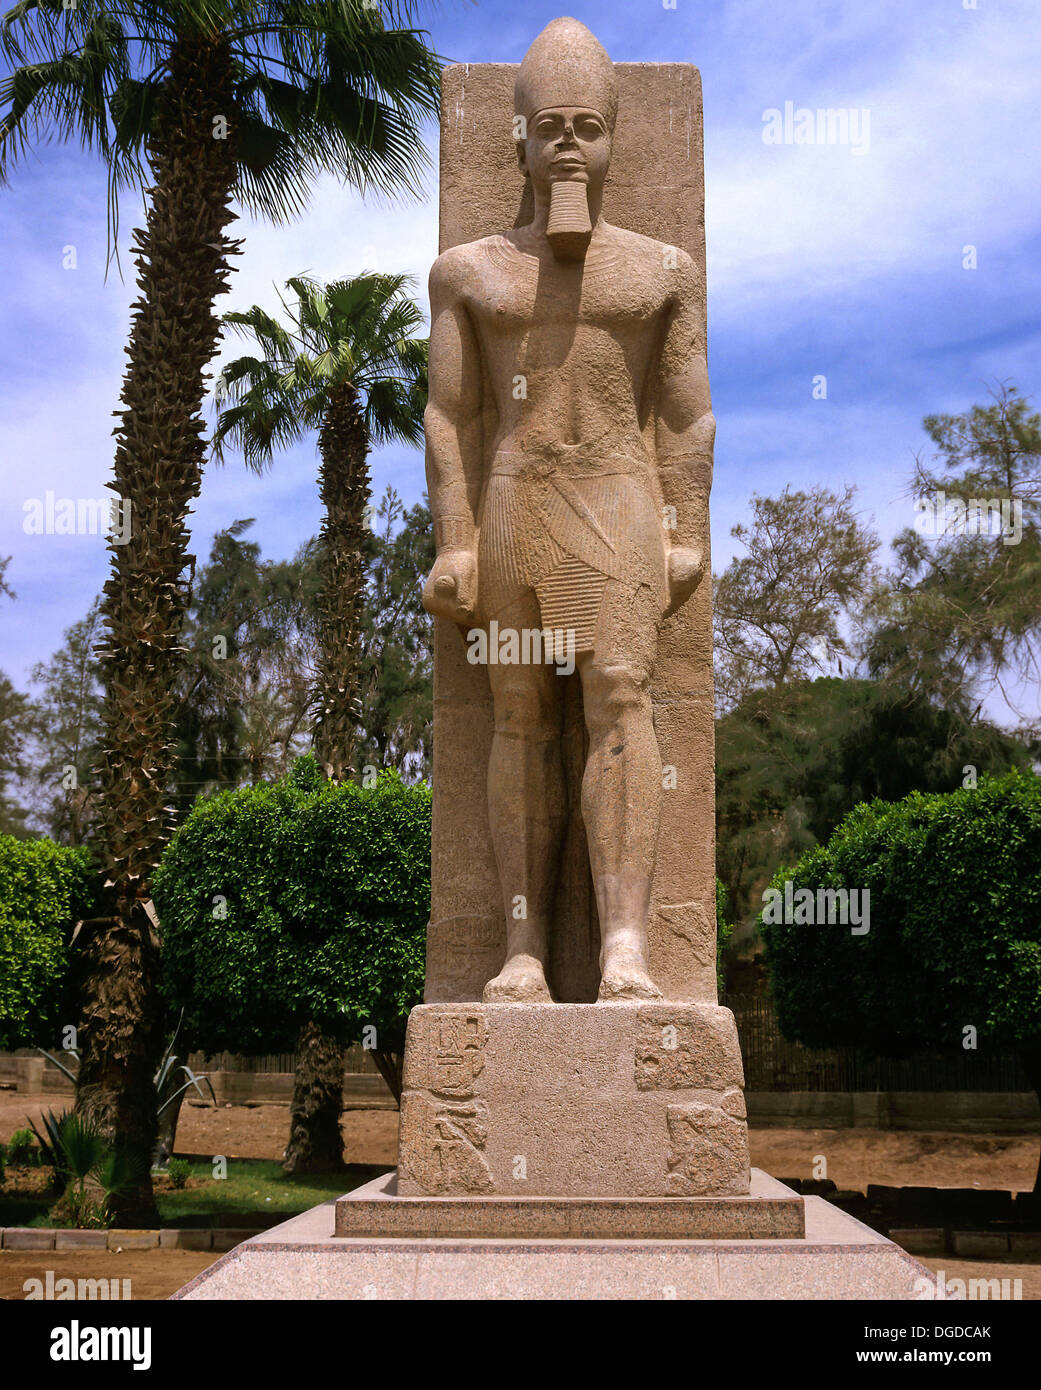 Kolossalstatue von Ramses II. - 13. Jahrhundert v. Chr., Ruinen von Memphis, Ägypten, Afrika Stockfoto